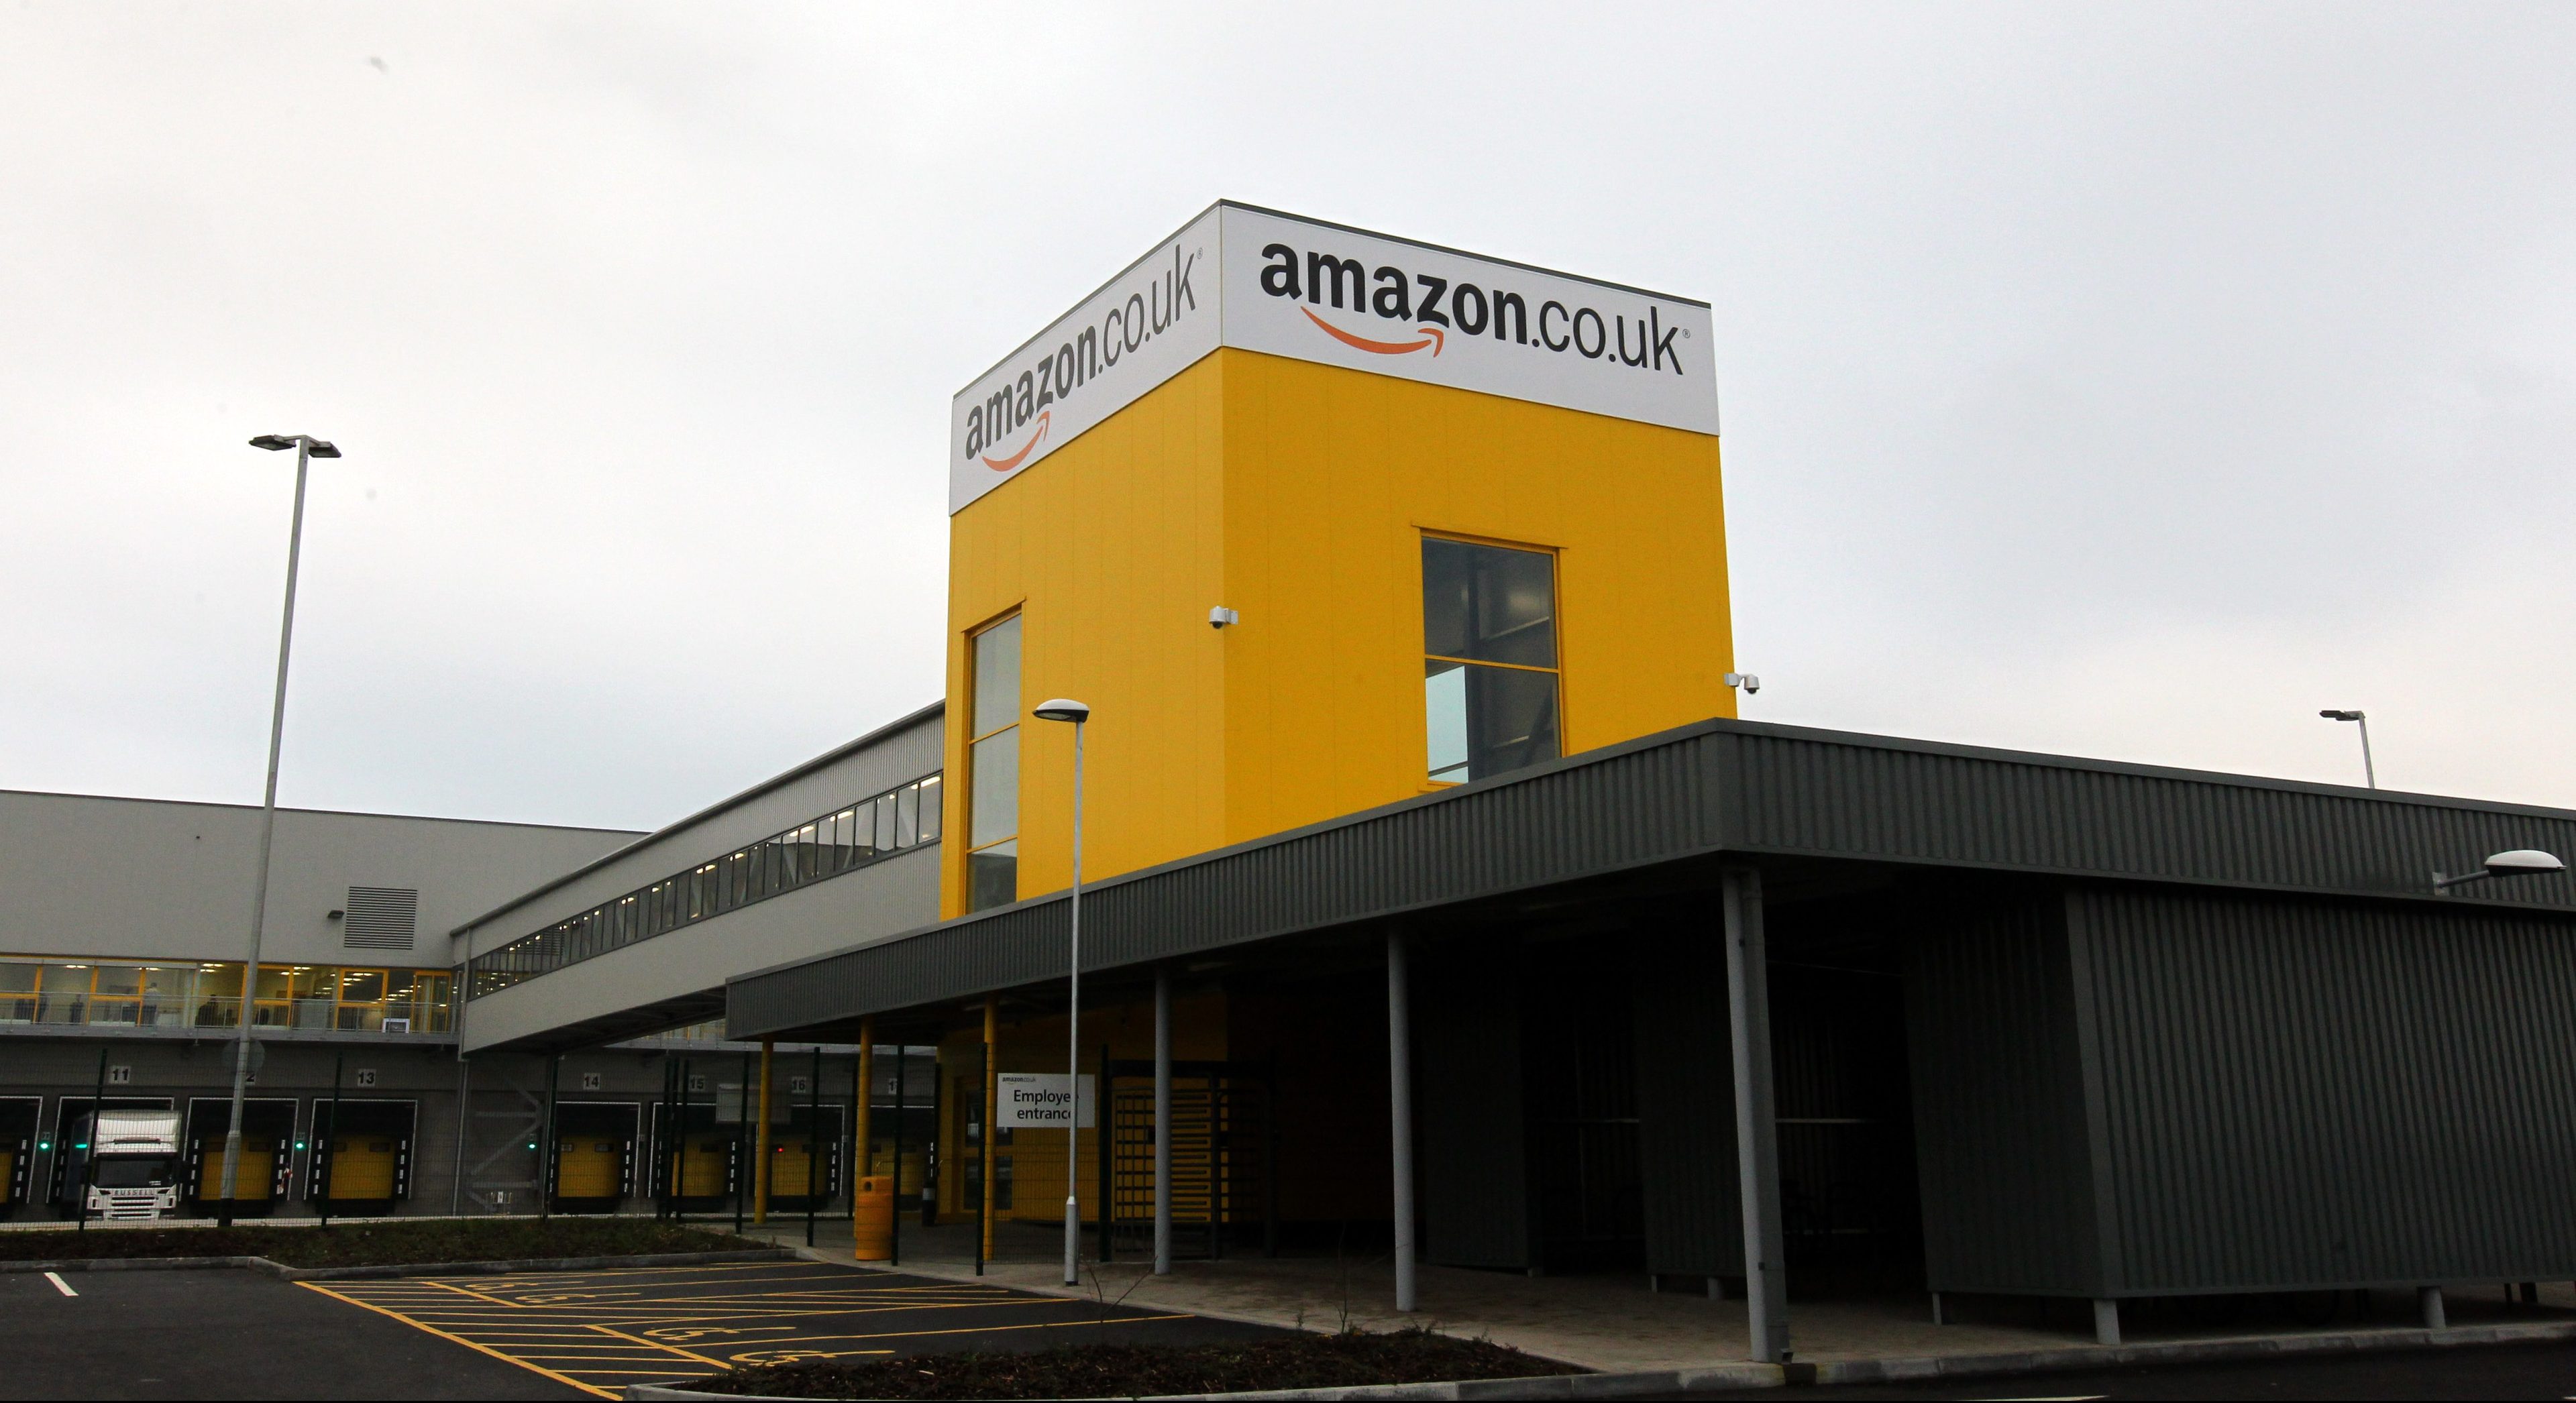 Amazon's Dunfermline fulfilment centre.